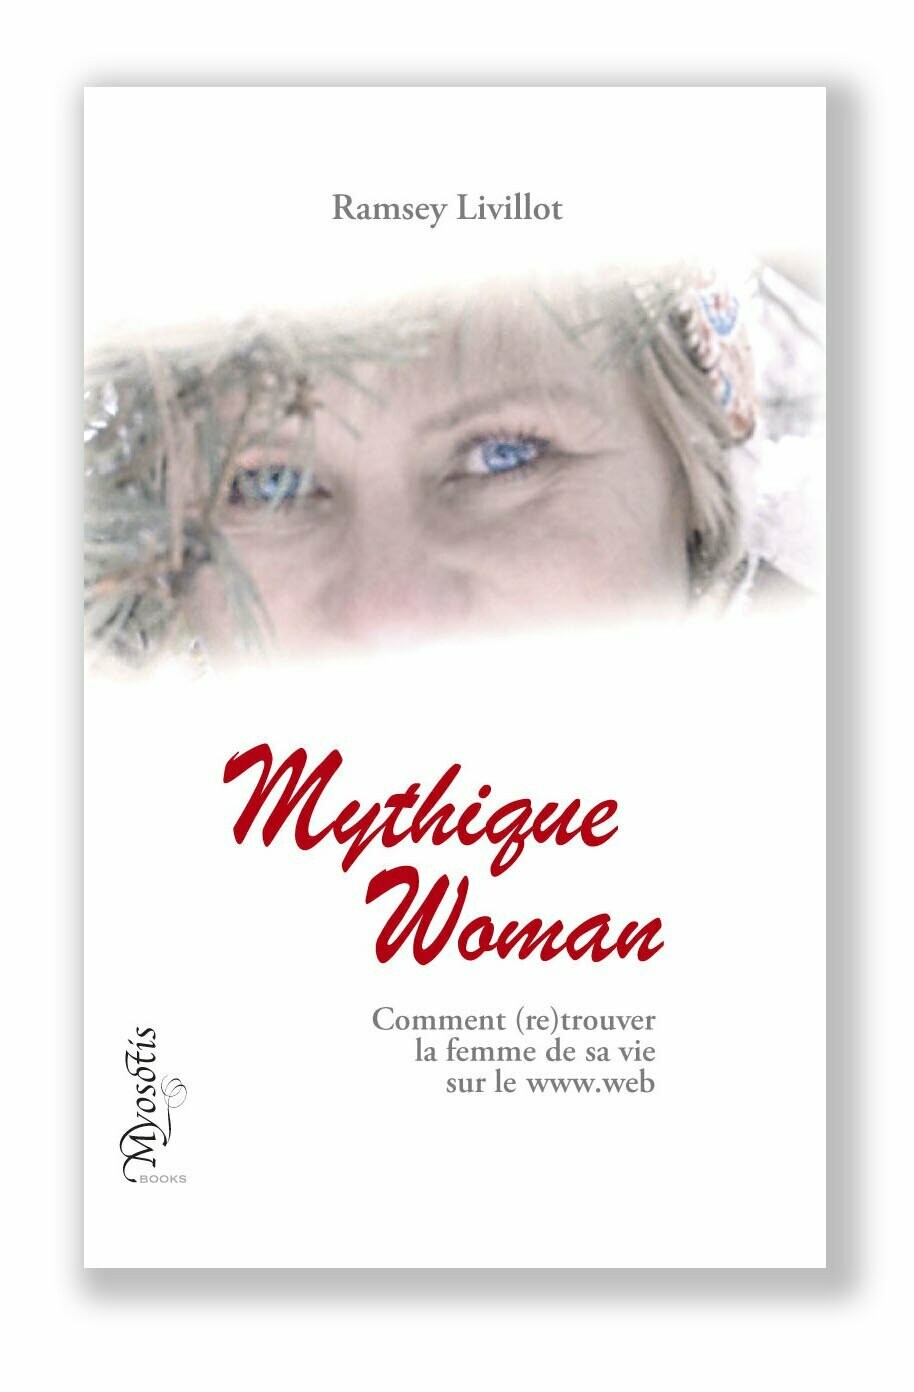 MYTHIQUE WOMAN
Comment (re)trouver la femme de sa vie sur le www.web - - - version papier